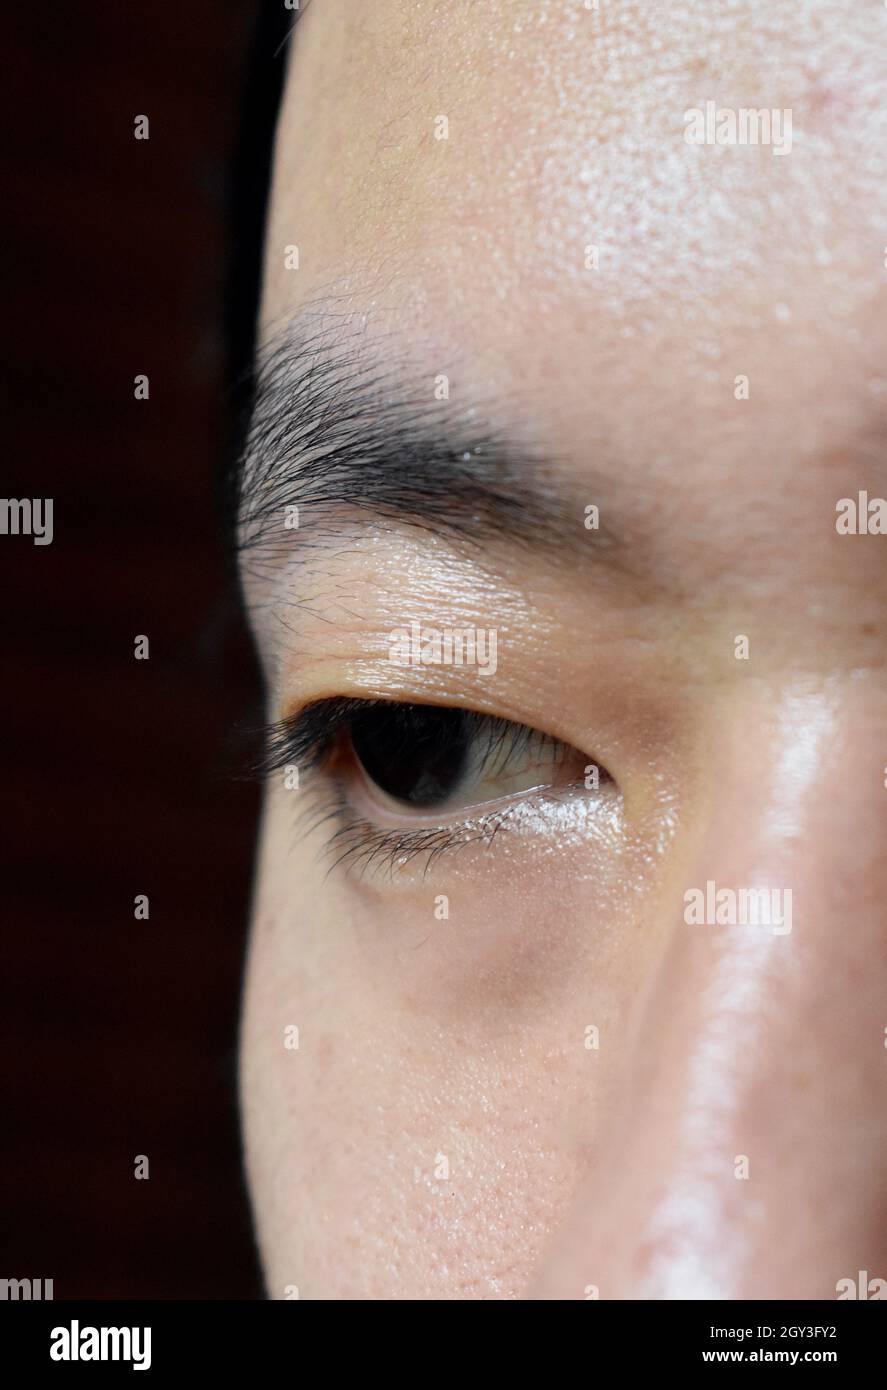 Sud-est asiatico, giovane cinese con palpebra singola o monolide. Un monolide significa che non vi è alcuna linea di piegatura visibile sotto l'area di fronte. Foto Stock